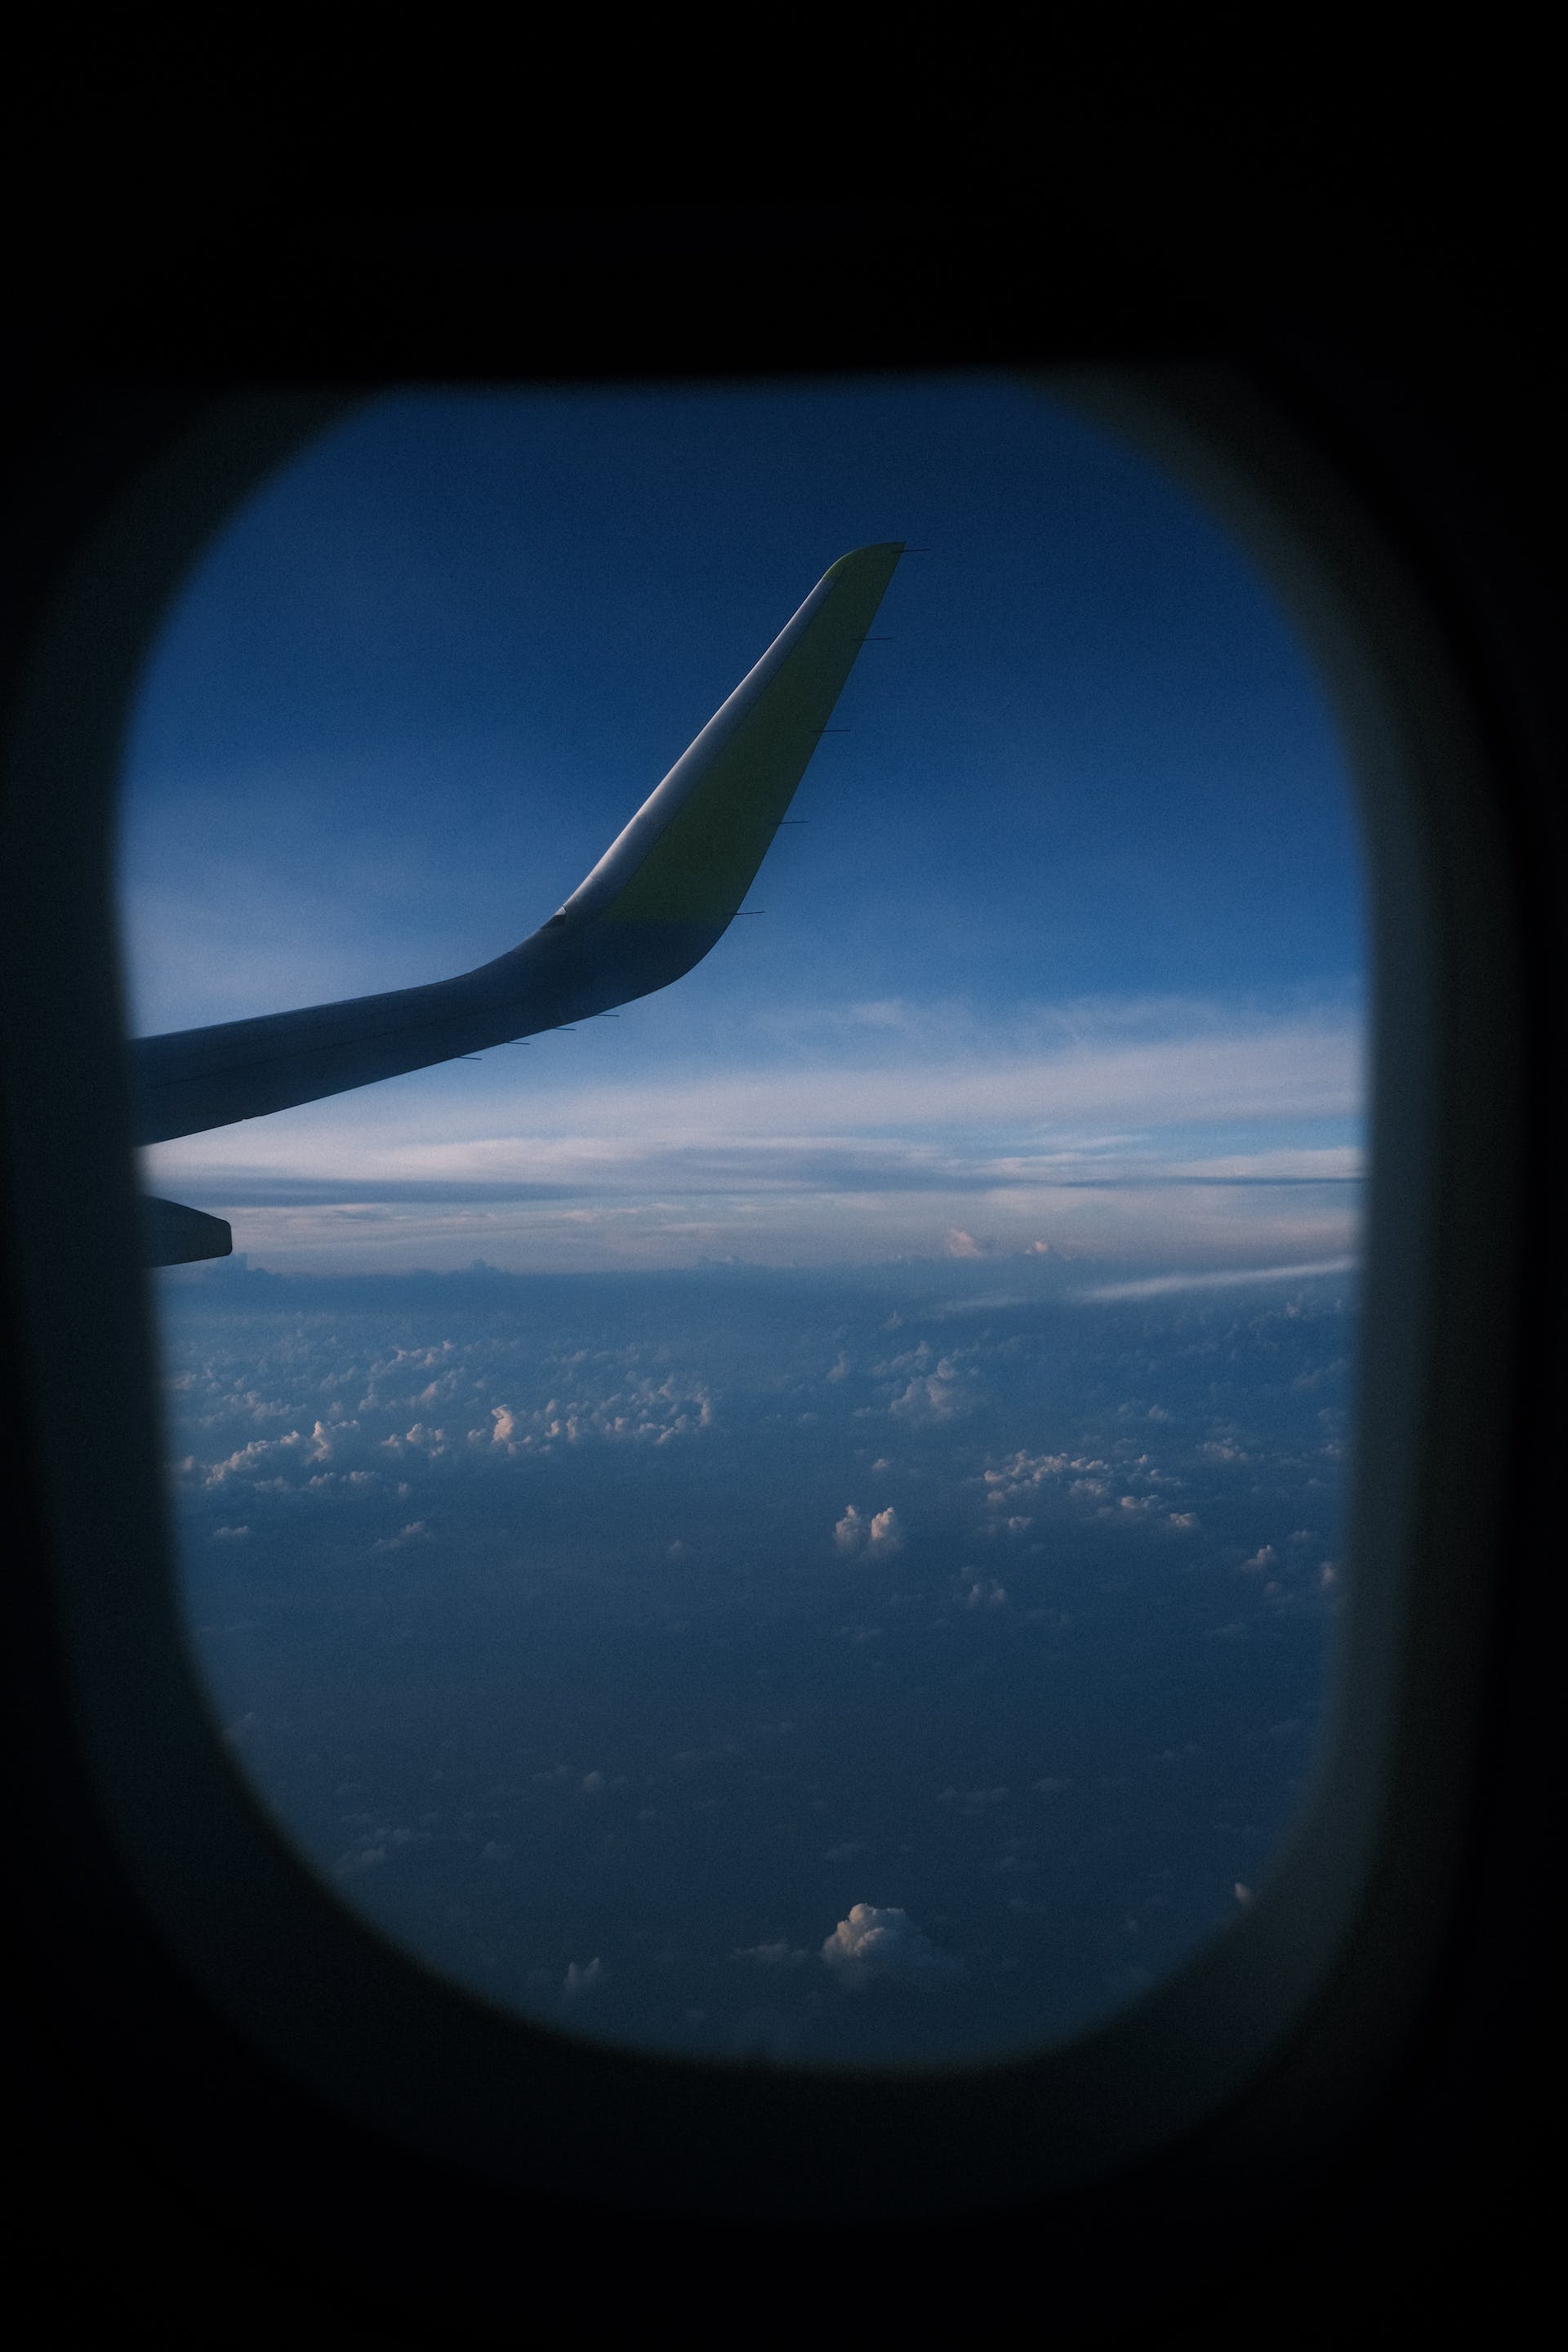 Vista desde la ventanilla de un avión | Fuente: Pexels